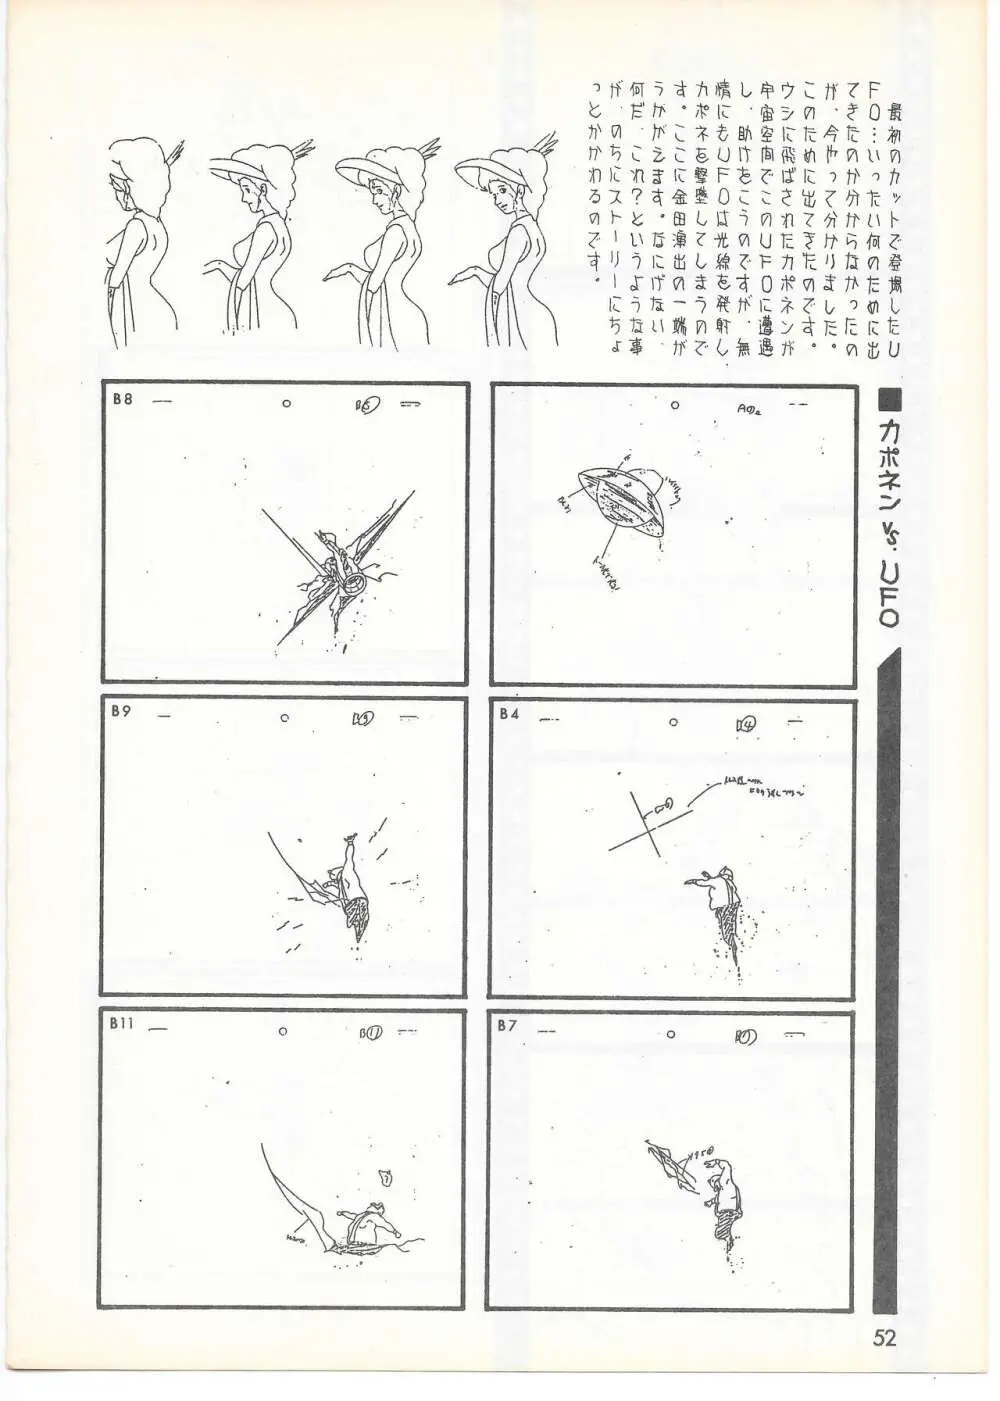 THE ANIMATOR 1 金田伊功特集号 49ページ